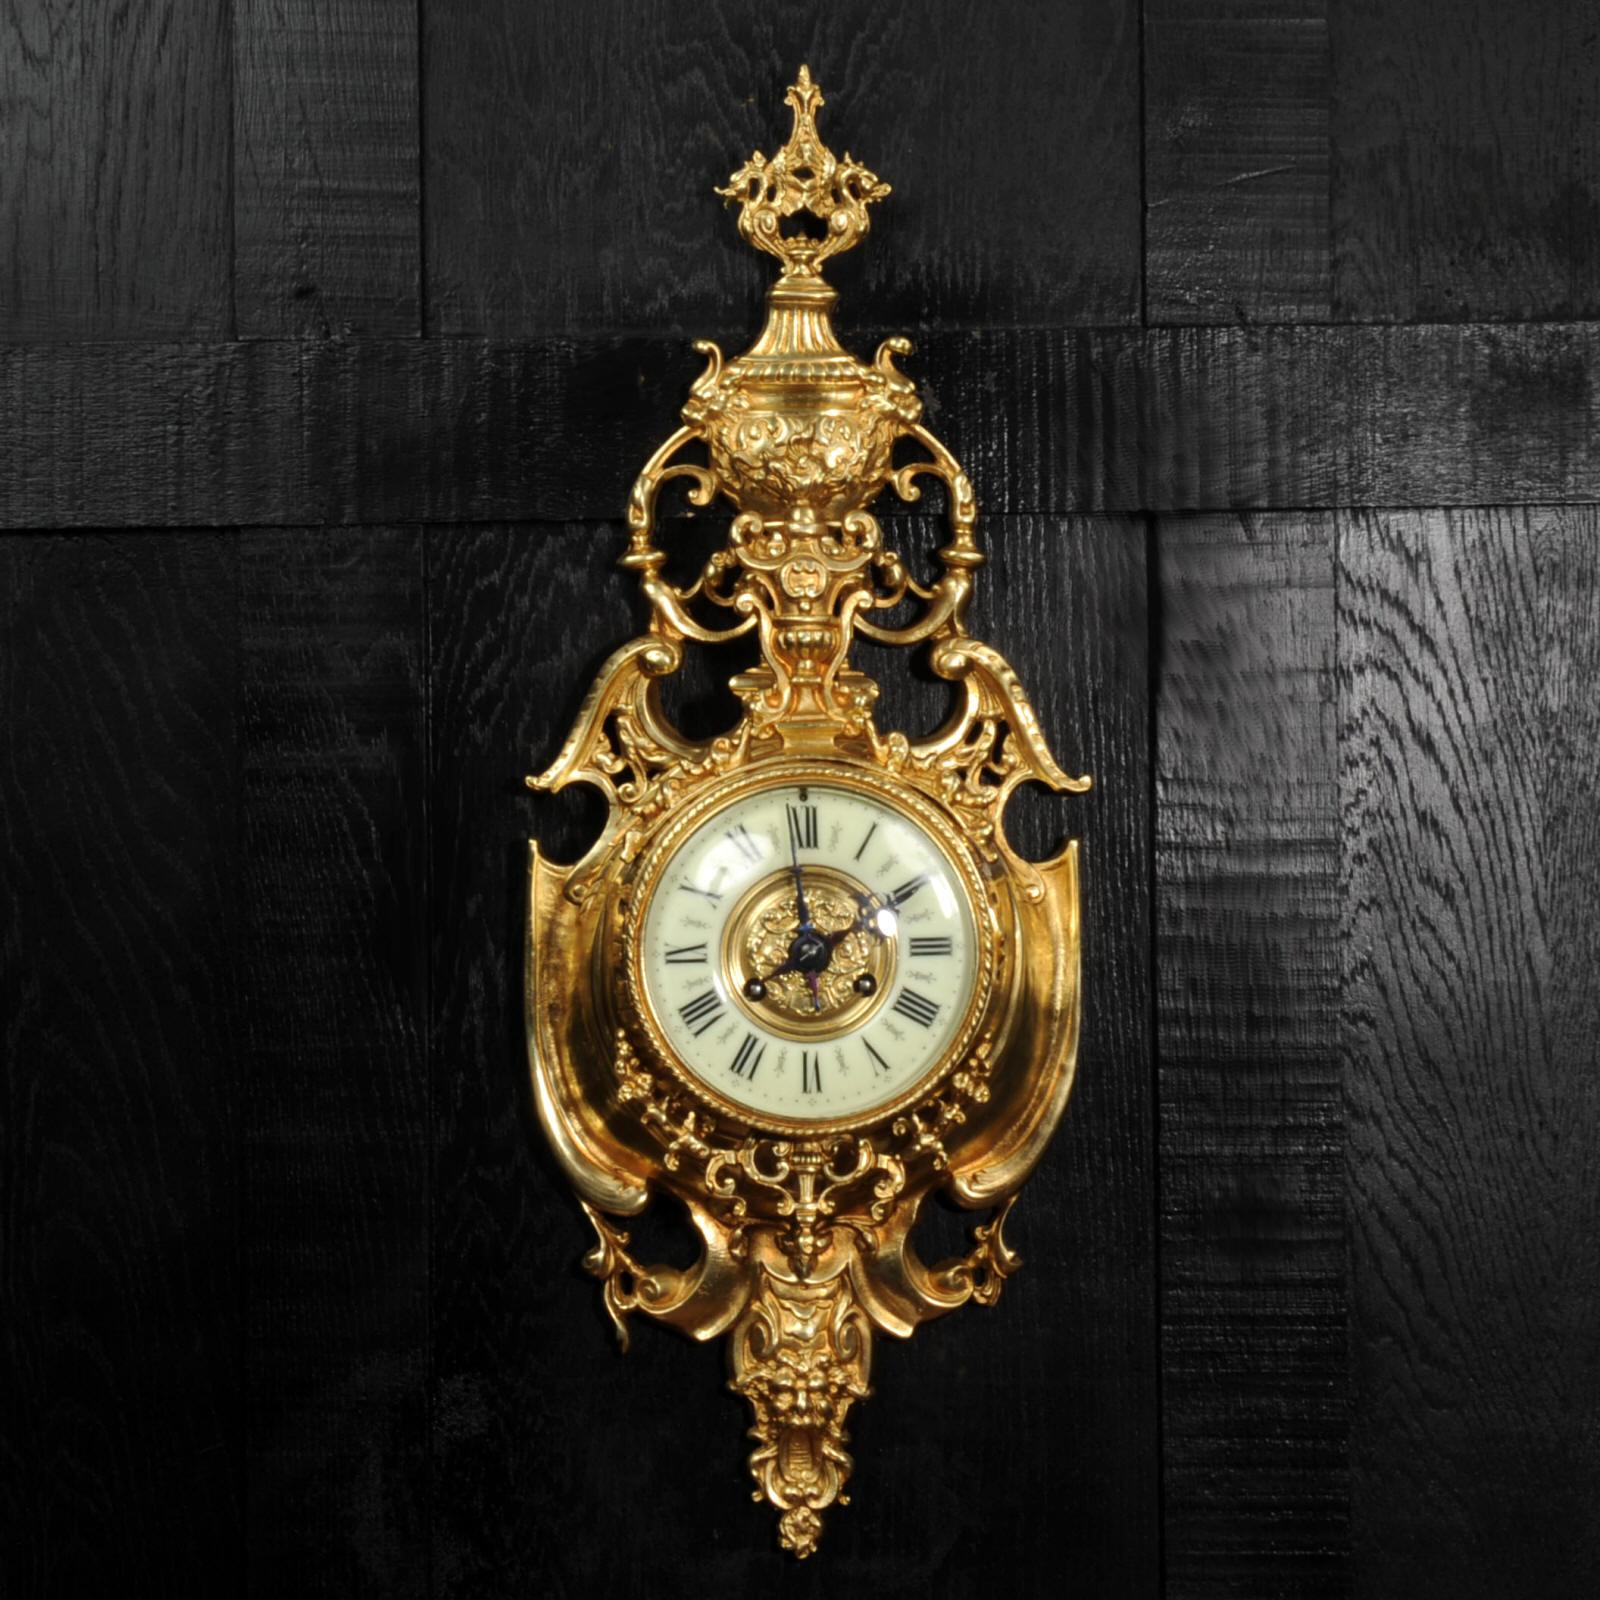 Une superbe horloge murale de cartel française ancienne et originale de Vincenti et Cie. Elle est magnifiquement modelée en bronze doré dans le style baroque, en forme de bouclier avec un fronton en col de cygne, un masque grotesque sous le cadran.